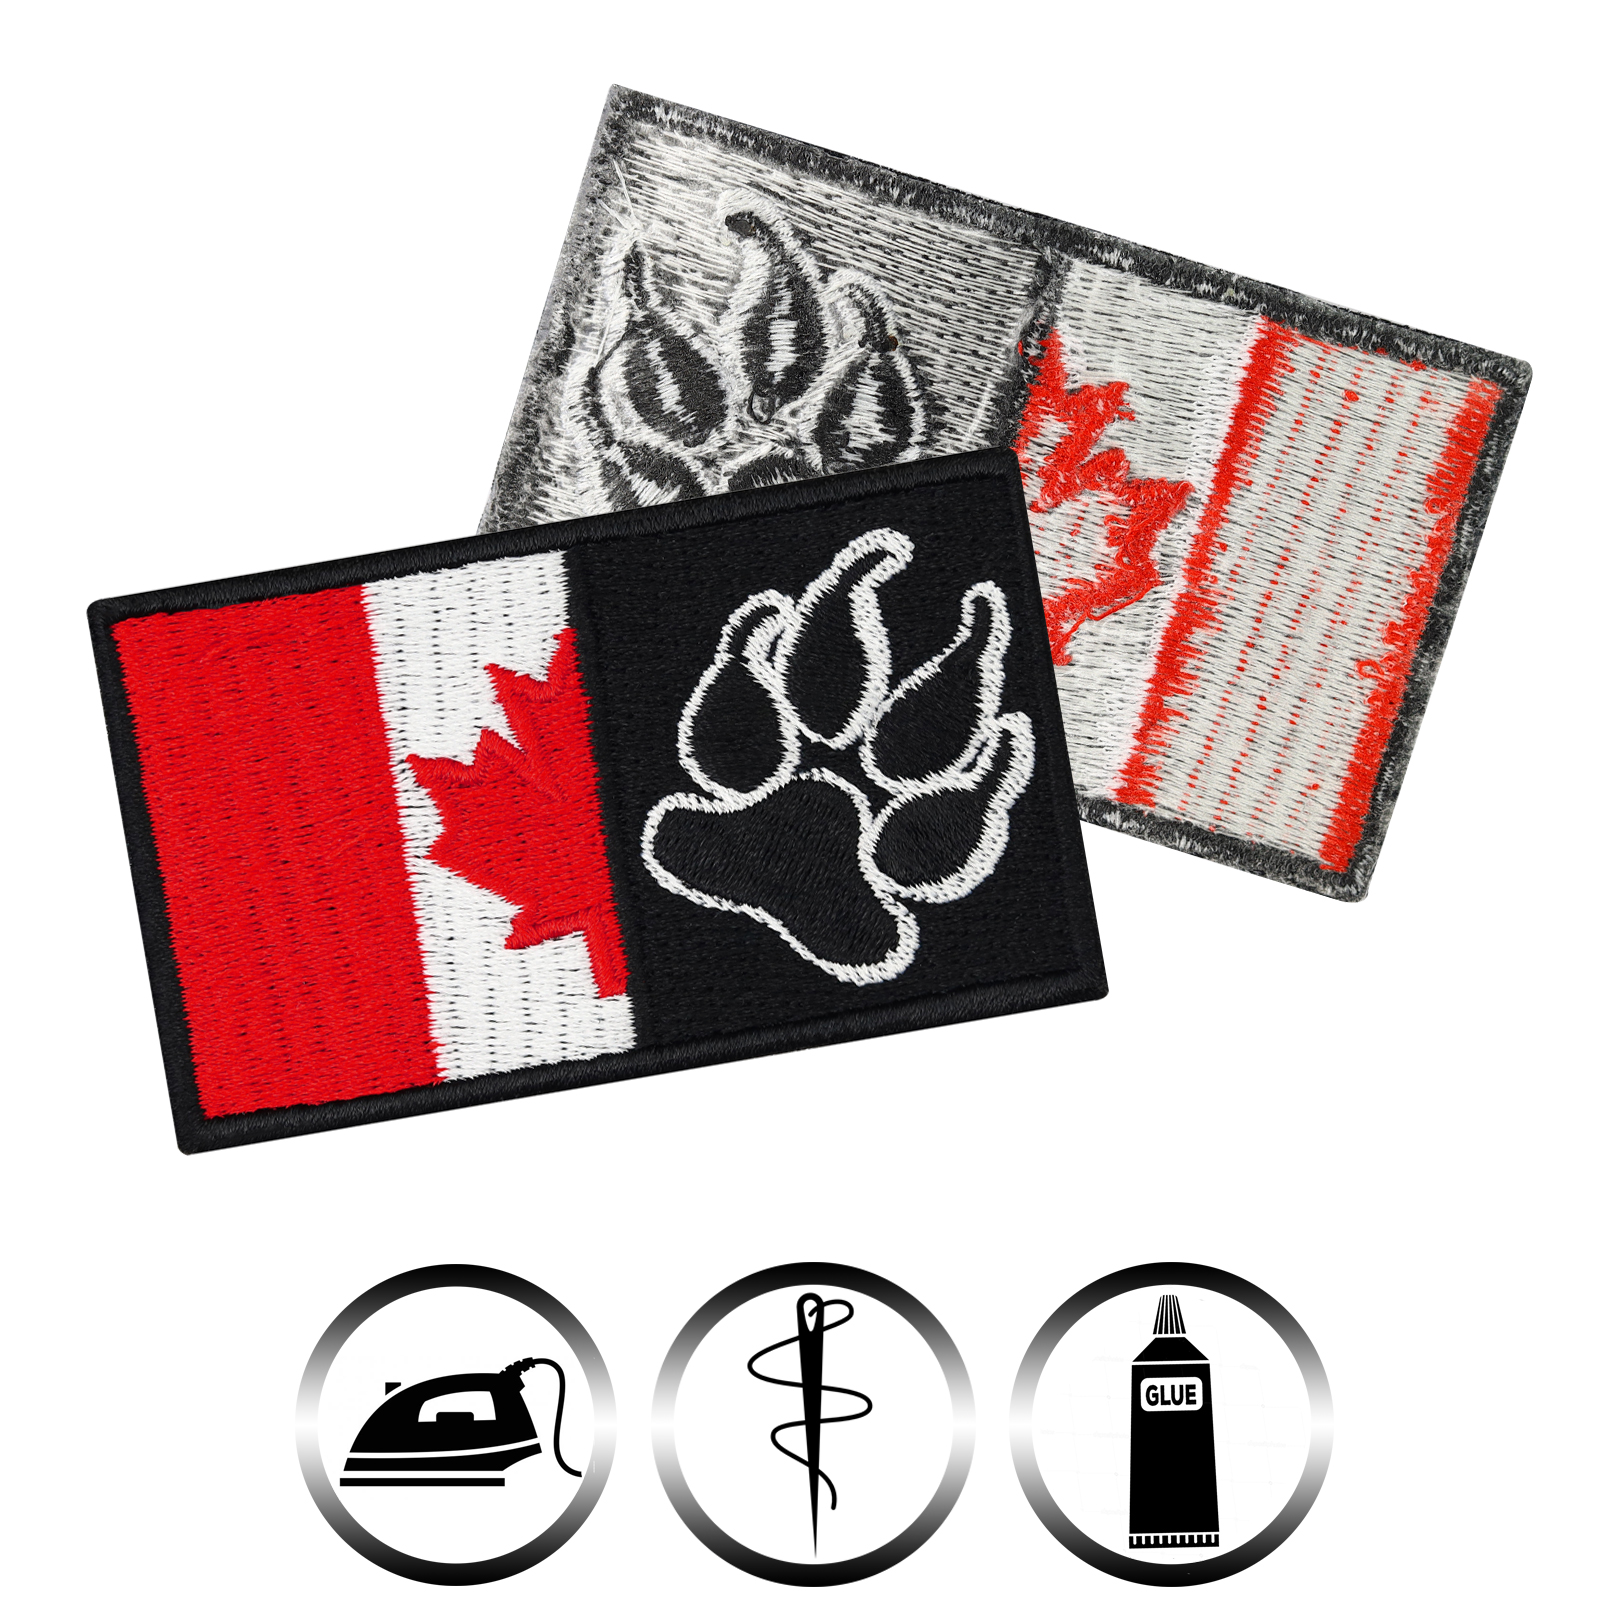 Canada K9 Flag mit Pfote - Patch